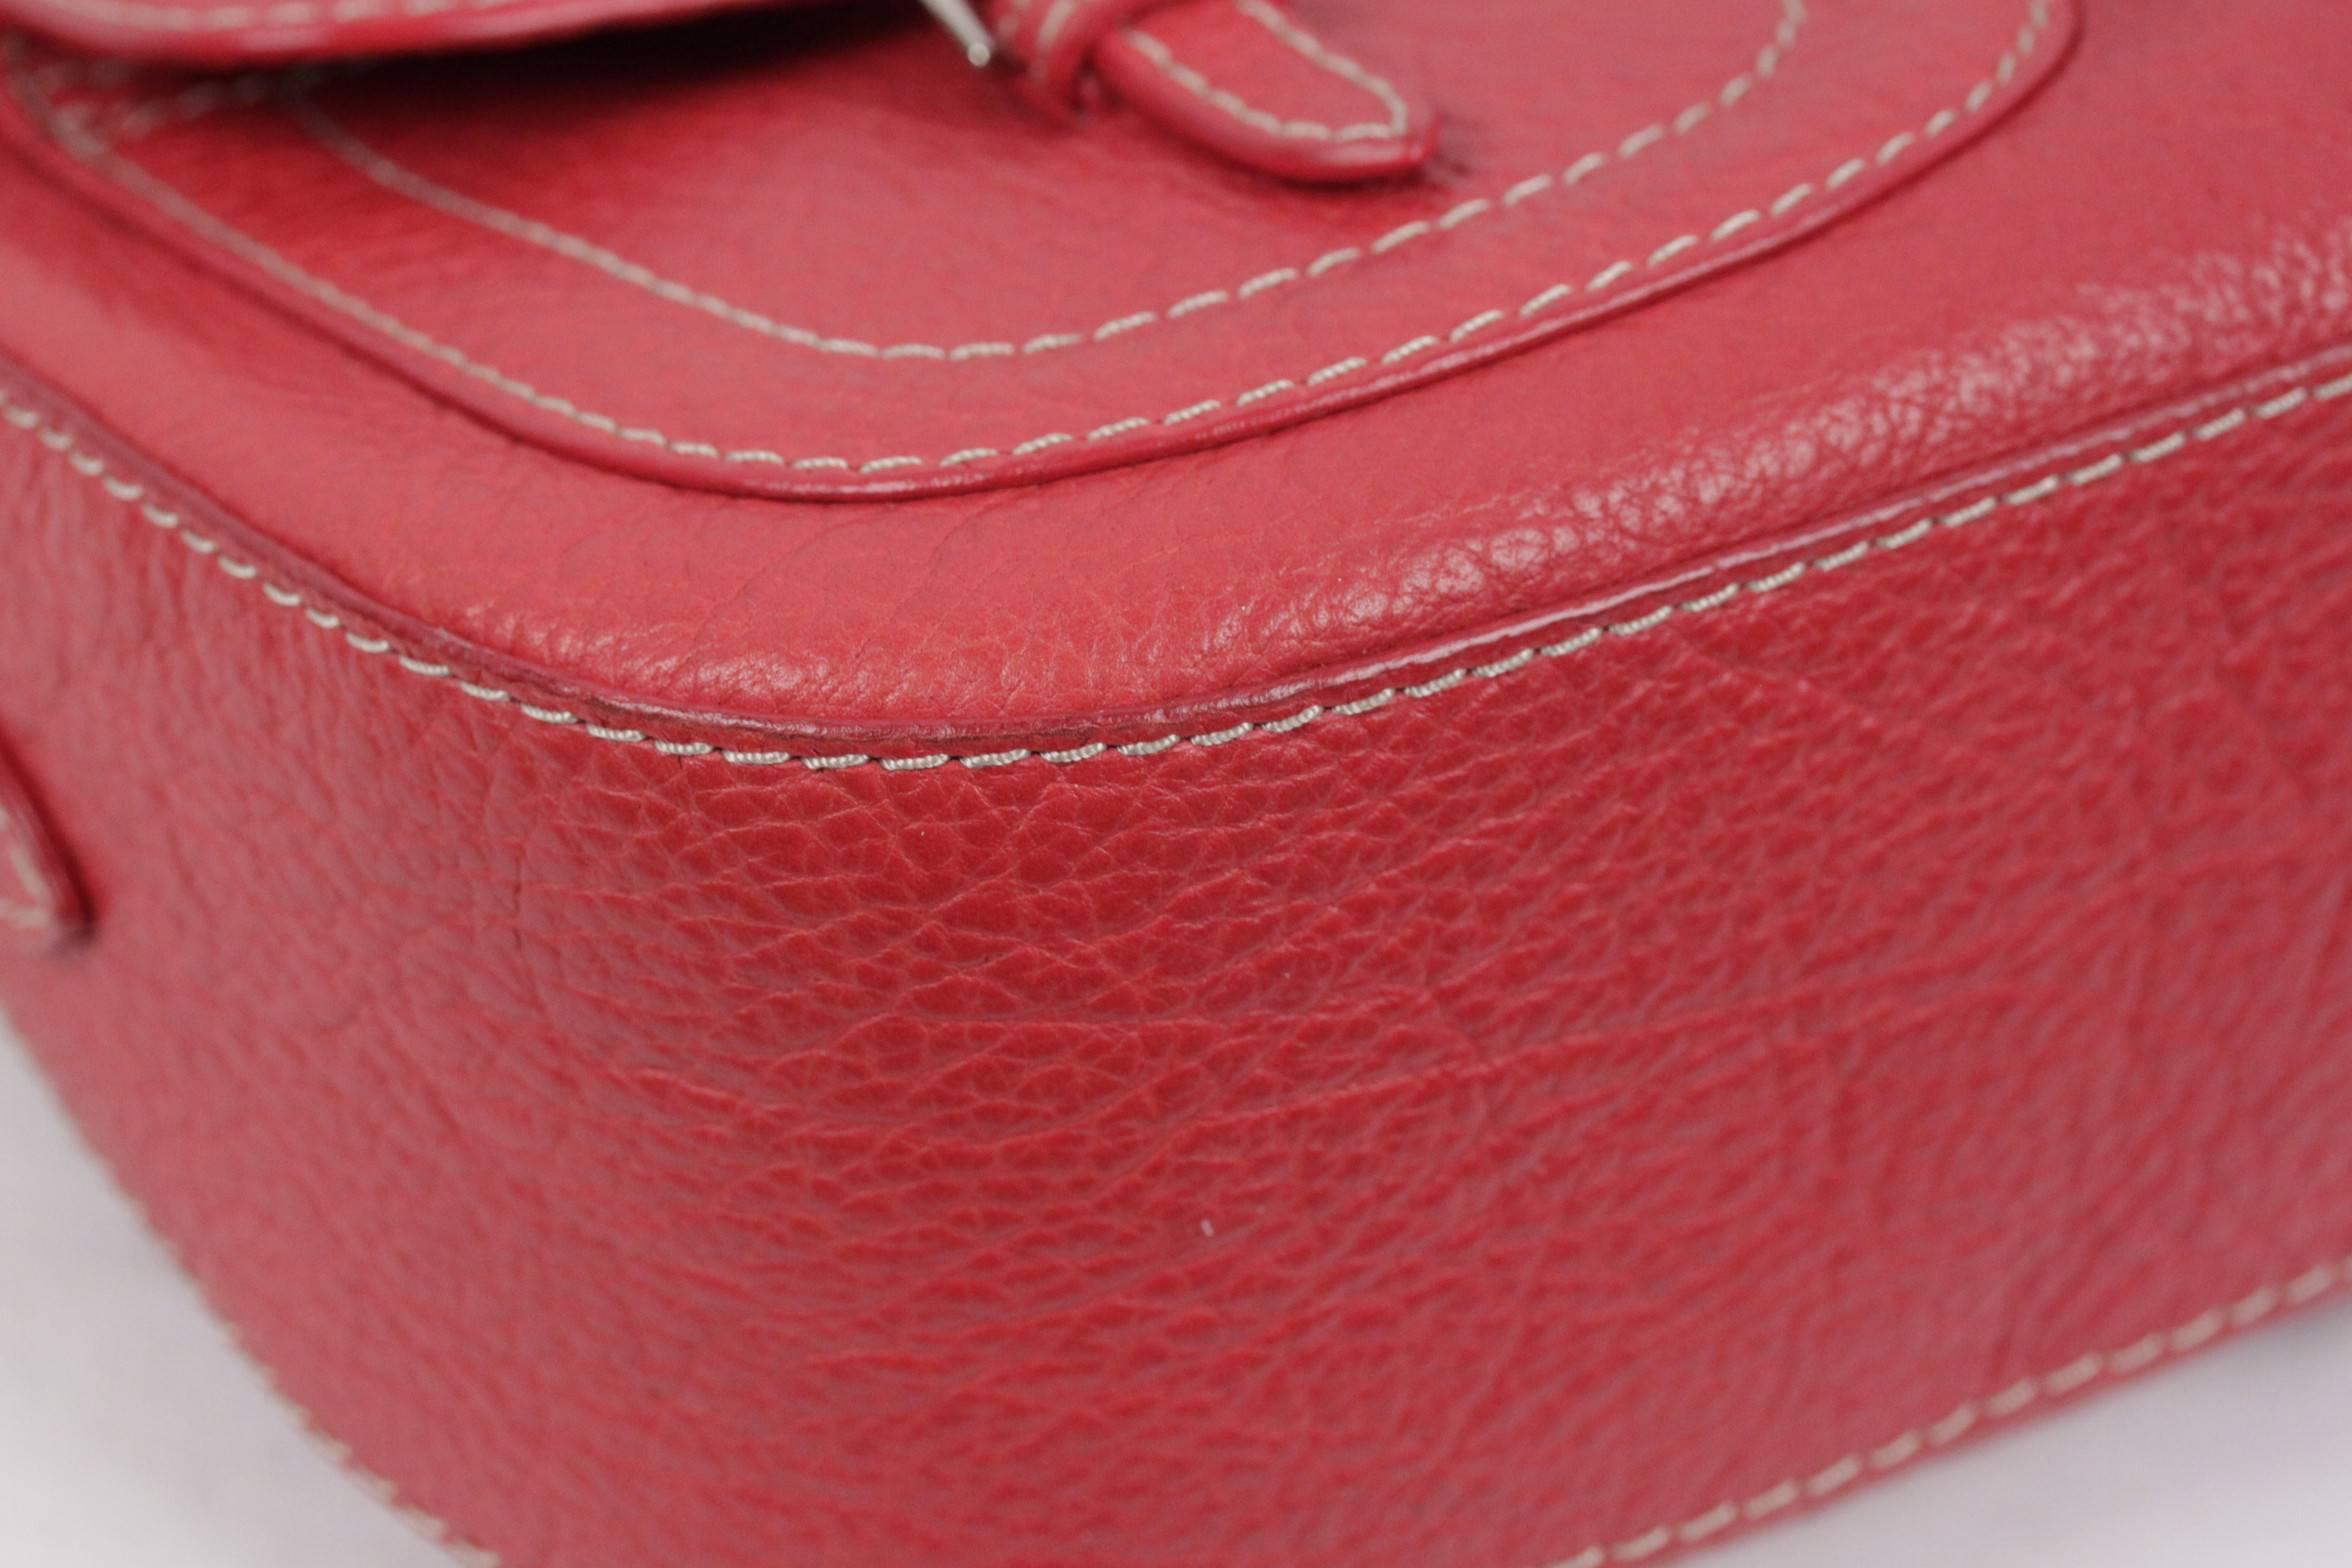 Women's VALENTINO GARAVANI Red Leather SHOULDER BAG Handbag w/ FRONT POCKETS